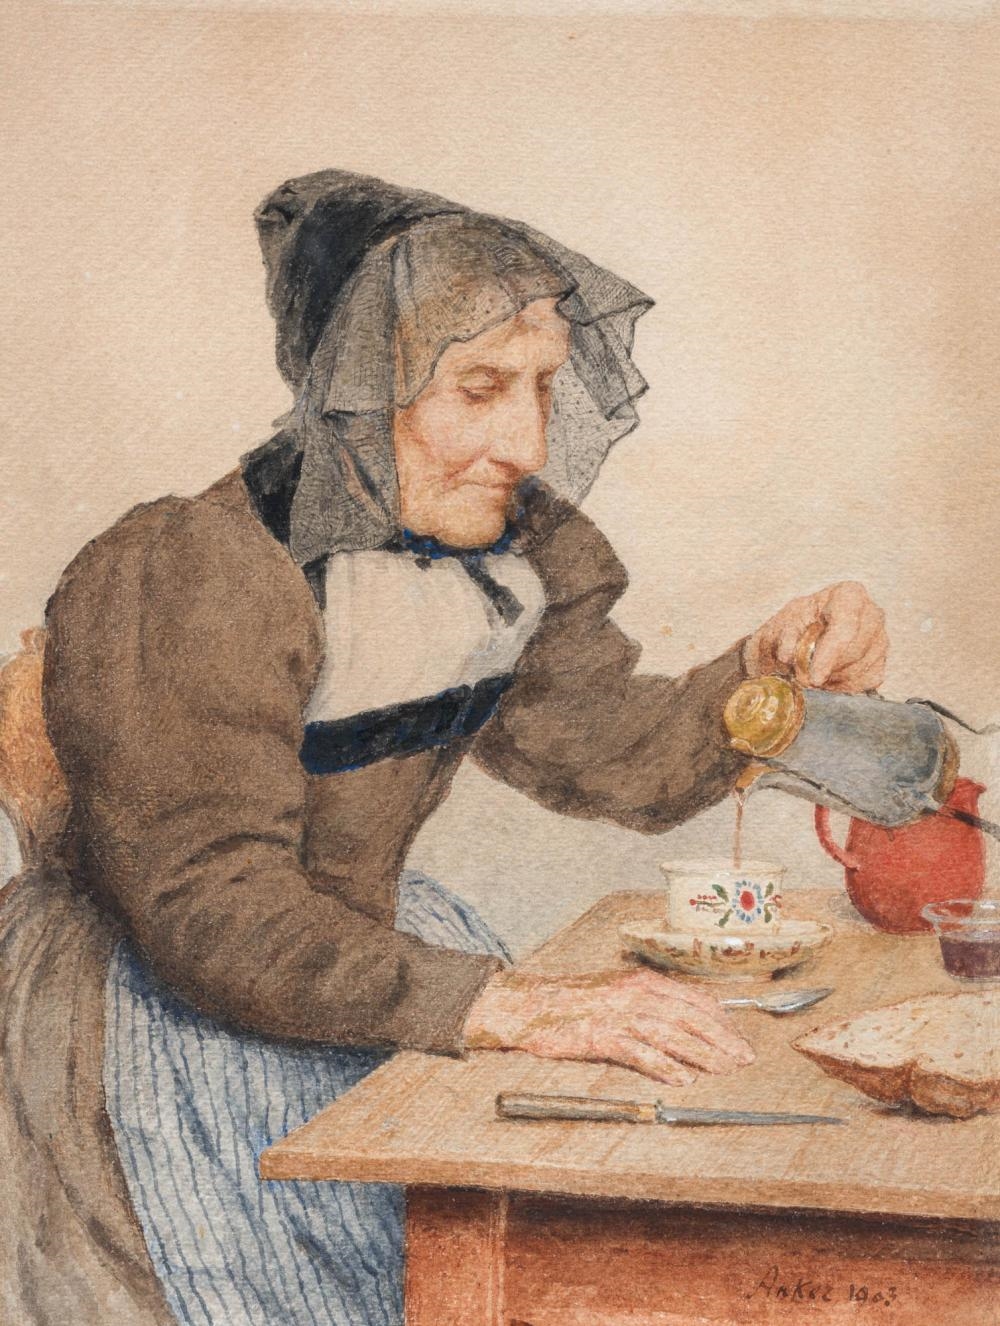 Seeländerbäuerin in Tracht beim Kaffee einschenken, 1903 by Albert Anker, 1903